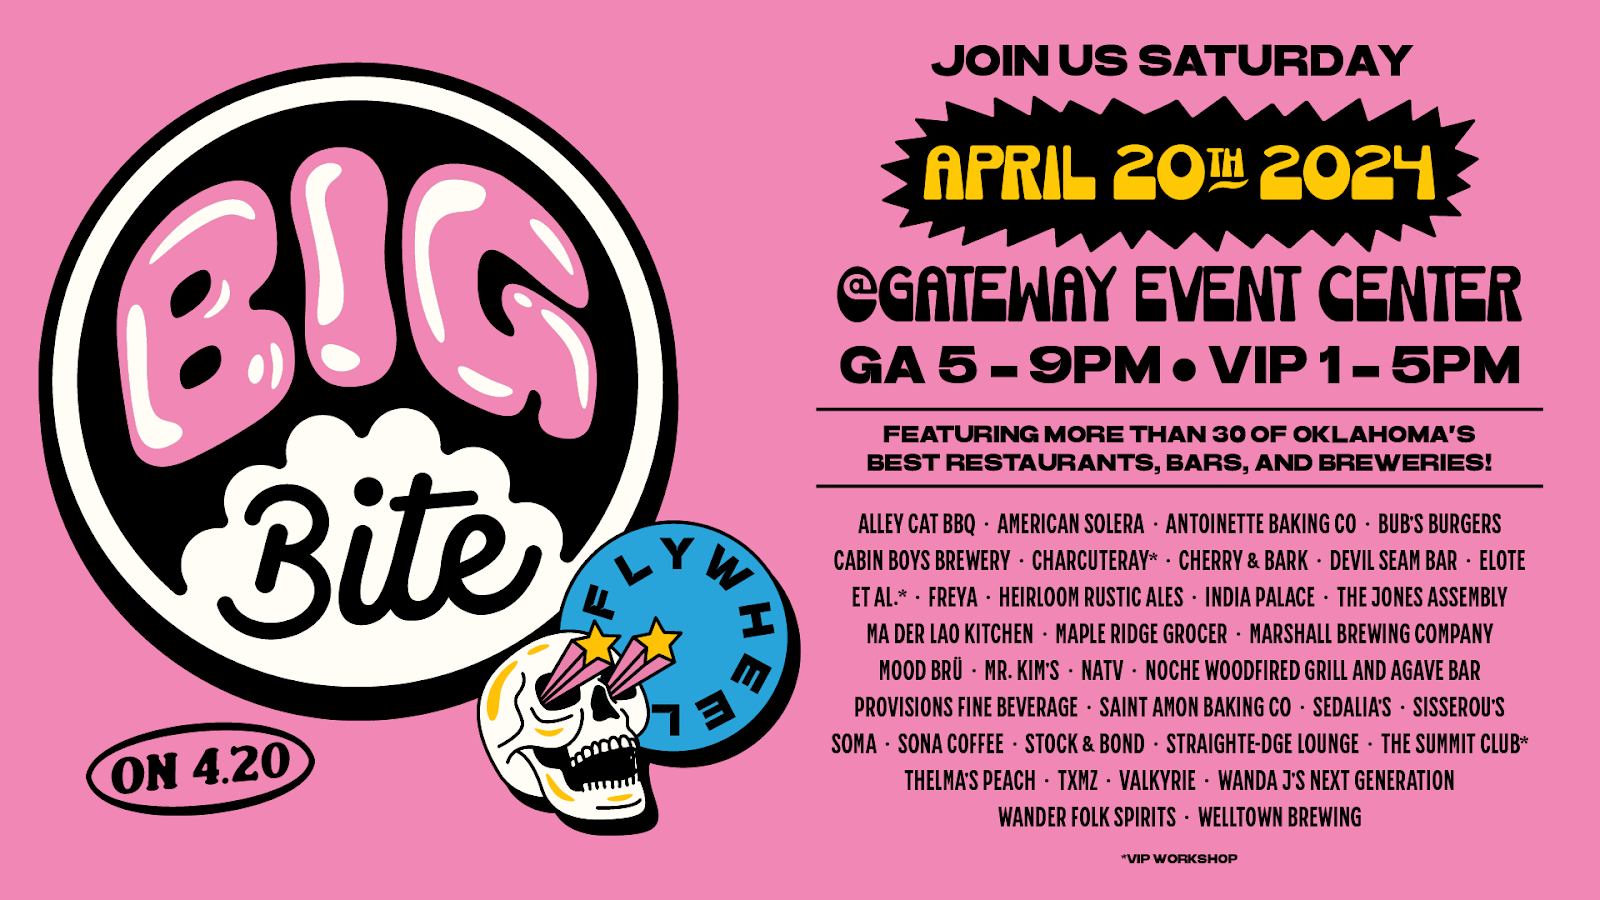 Big Bite - Join Us Saturday April 20th, 2024 @ Gateway Event Center - GA 5-9PM - VIP 1-5PM